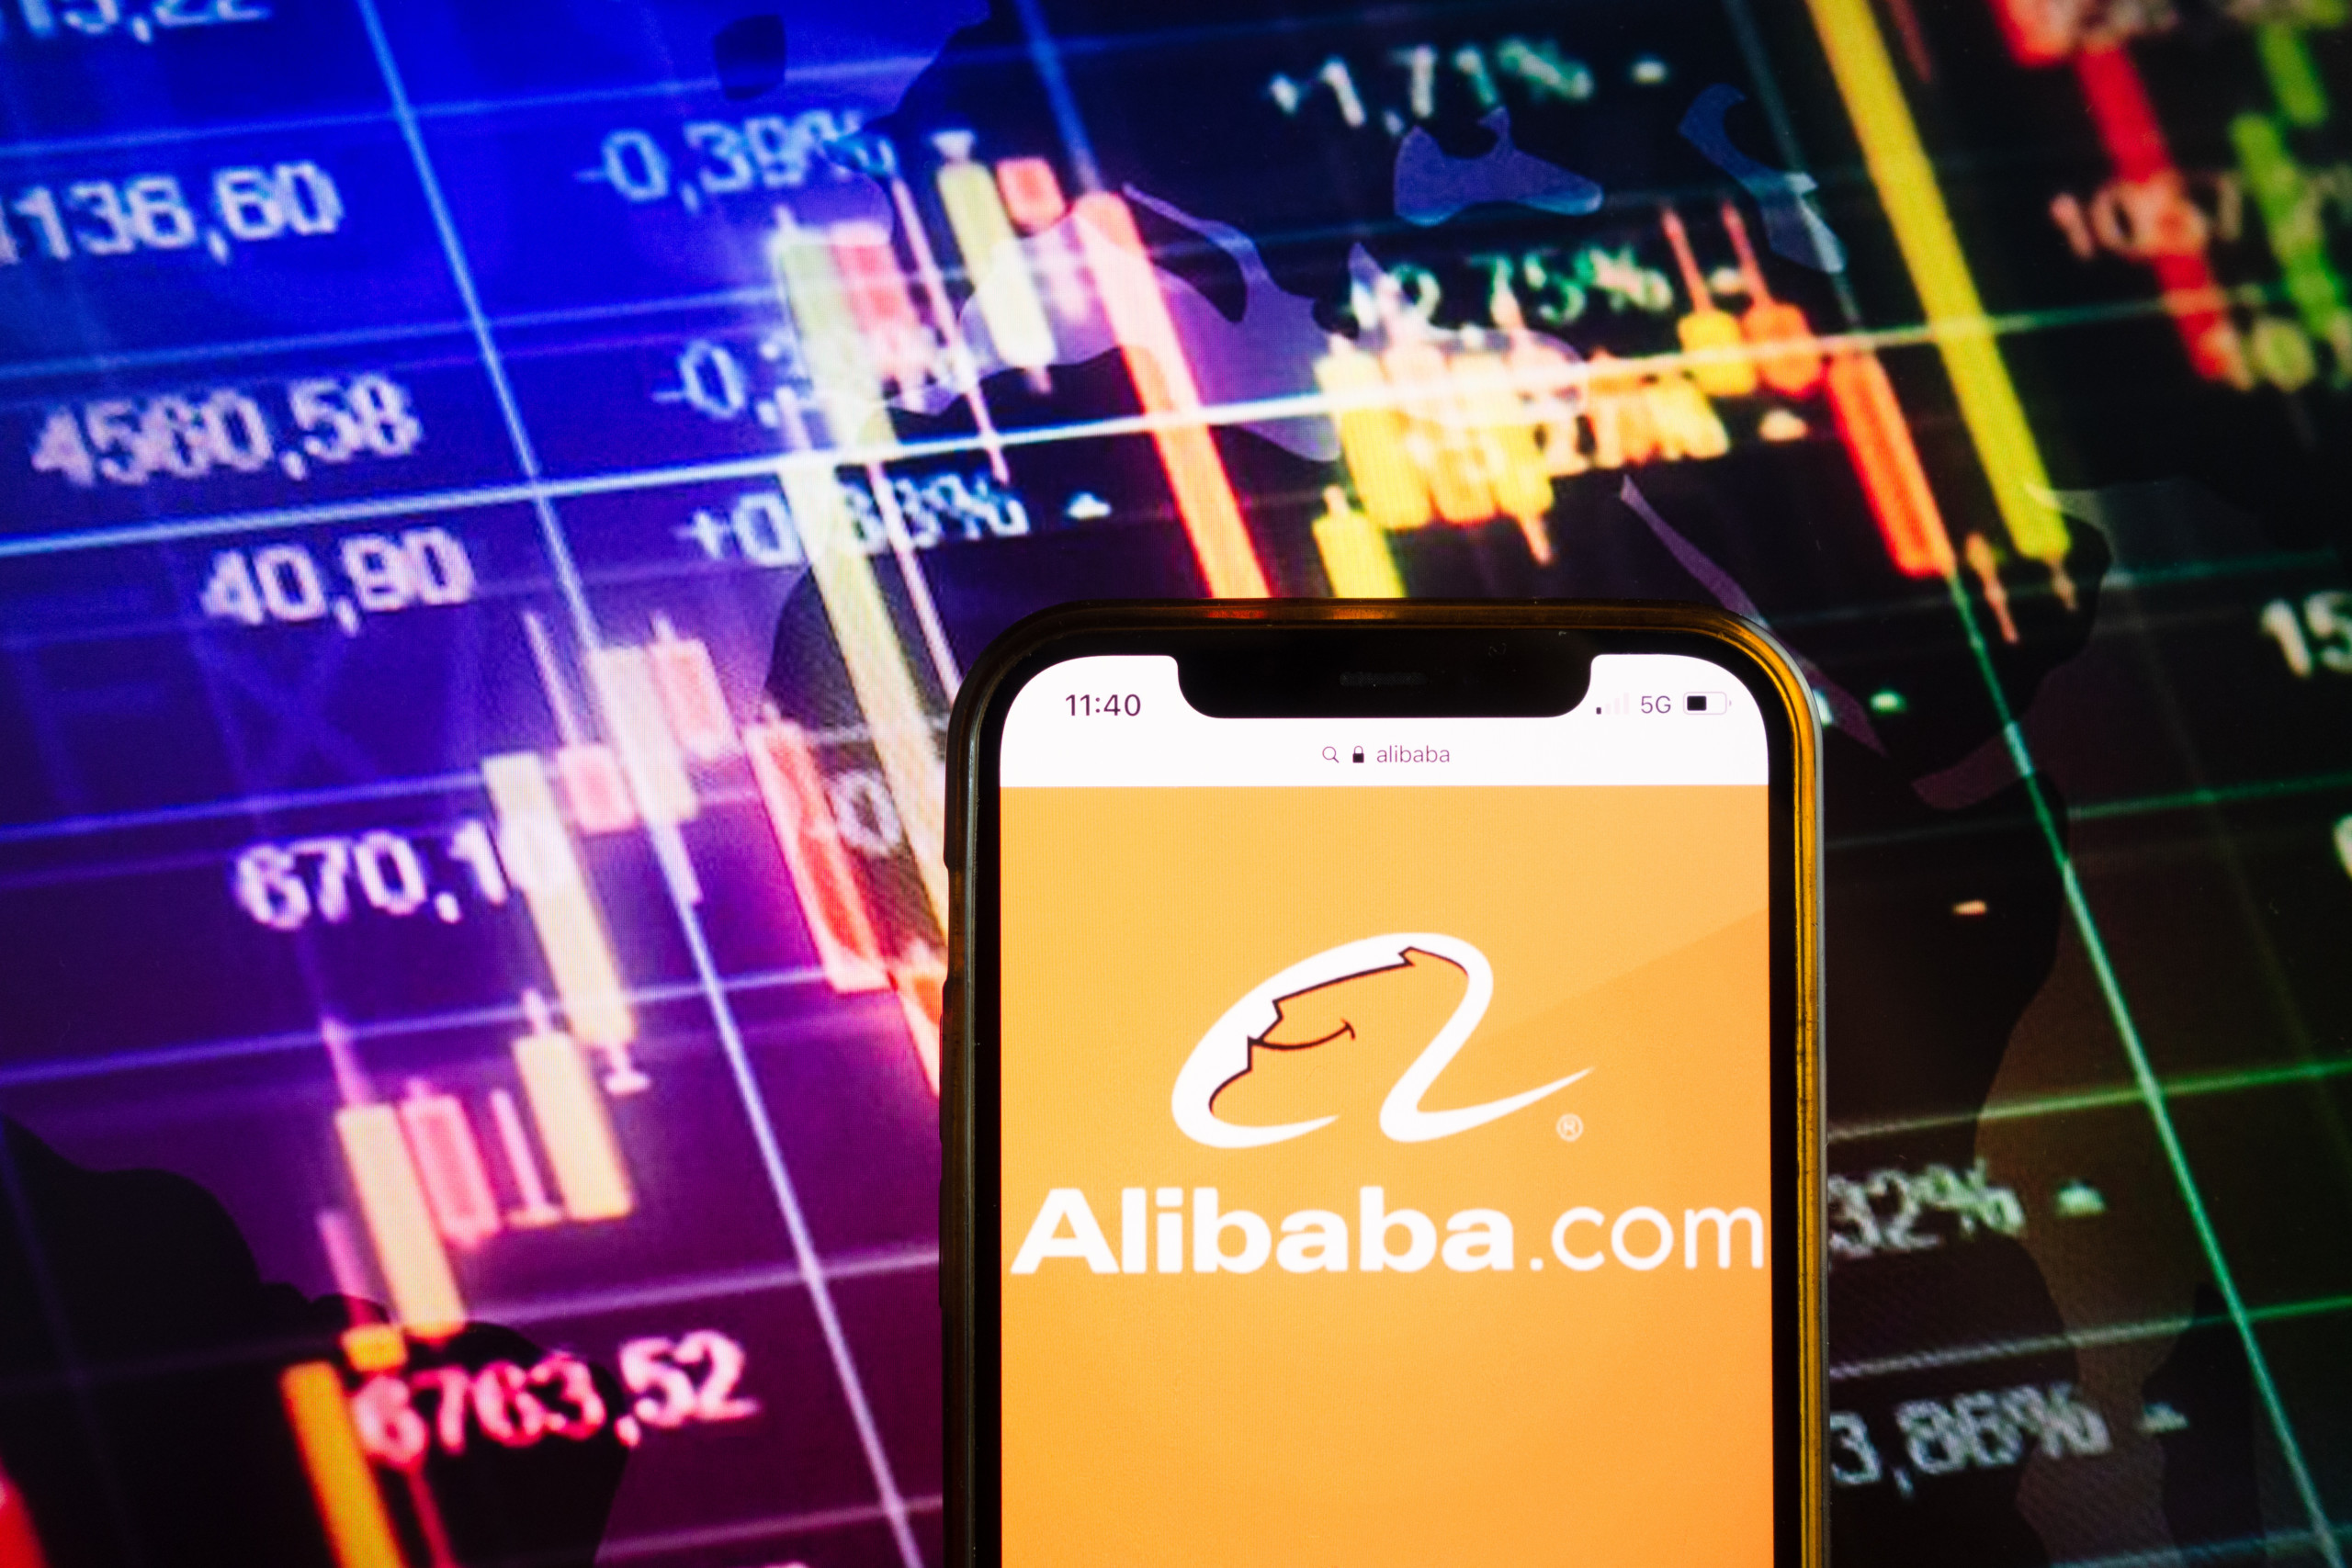 KI-Hoffnung und Regulierungsende treiben Alibaba-Aktien an